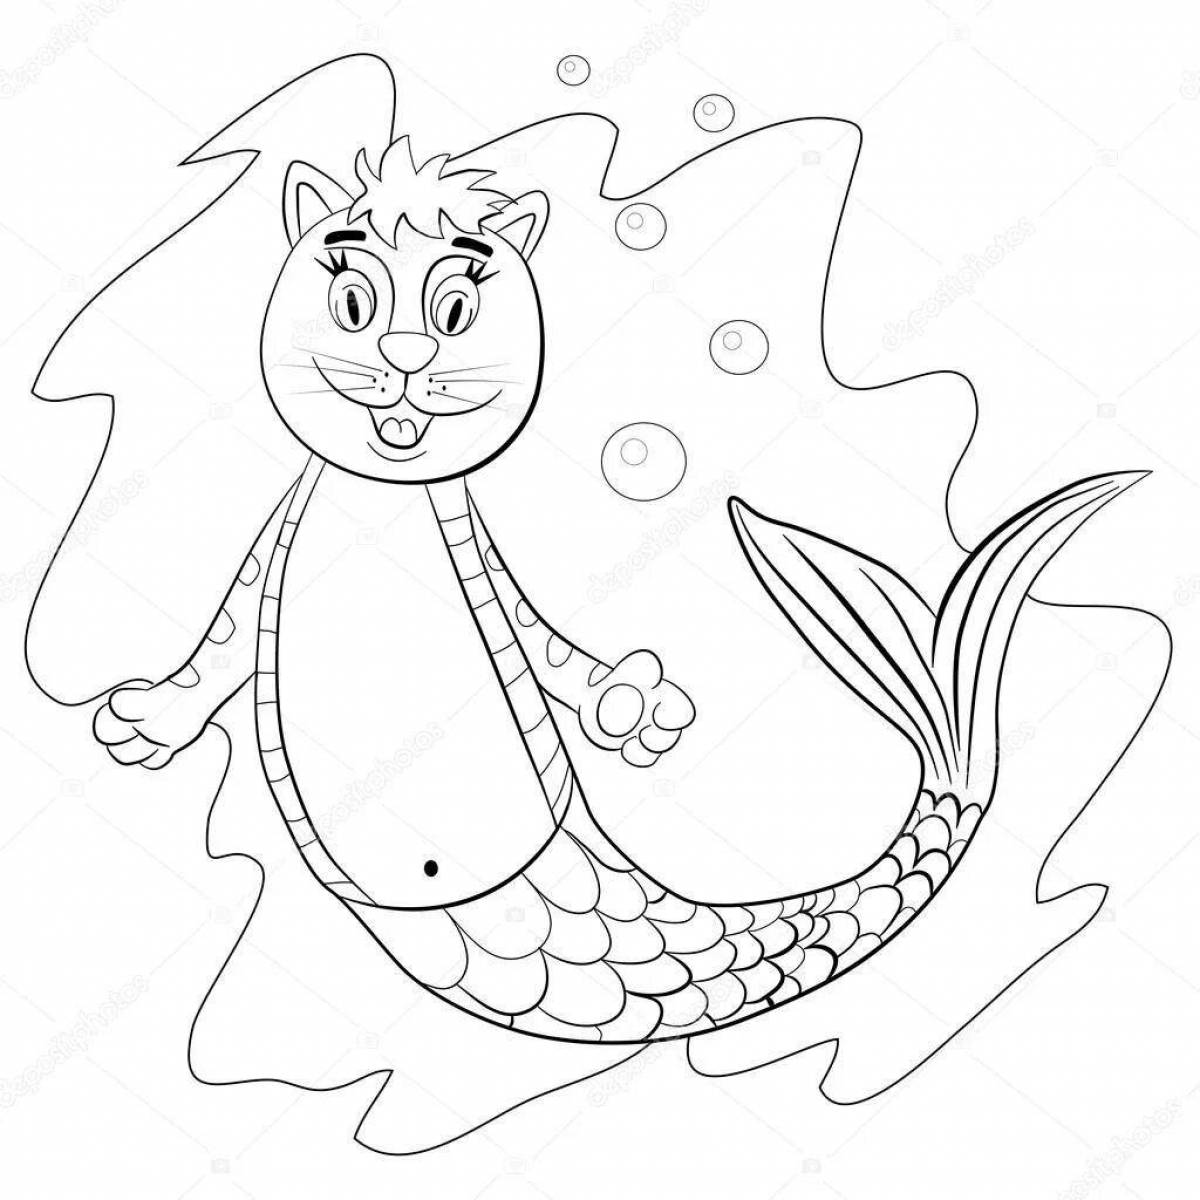 Playful coloring cat mermaid